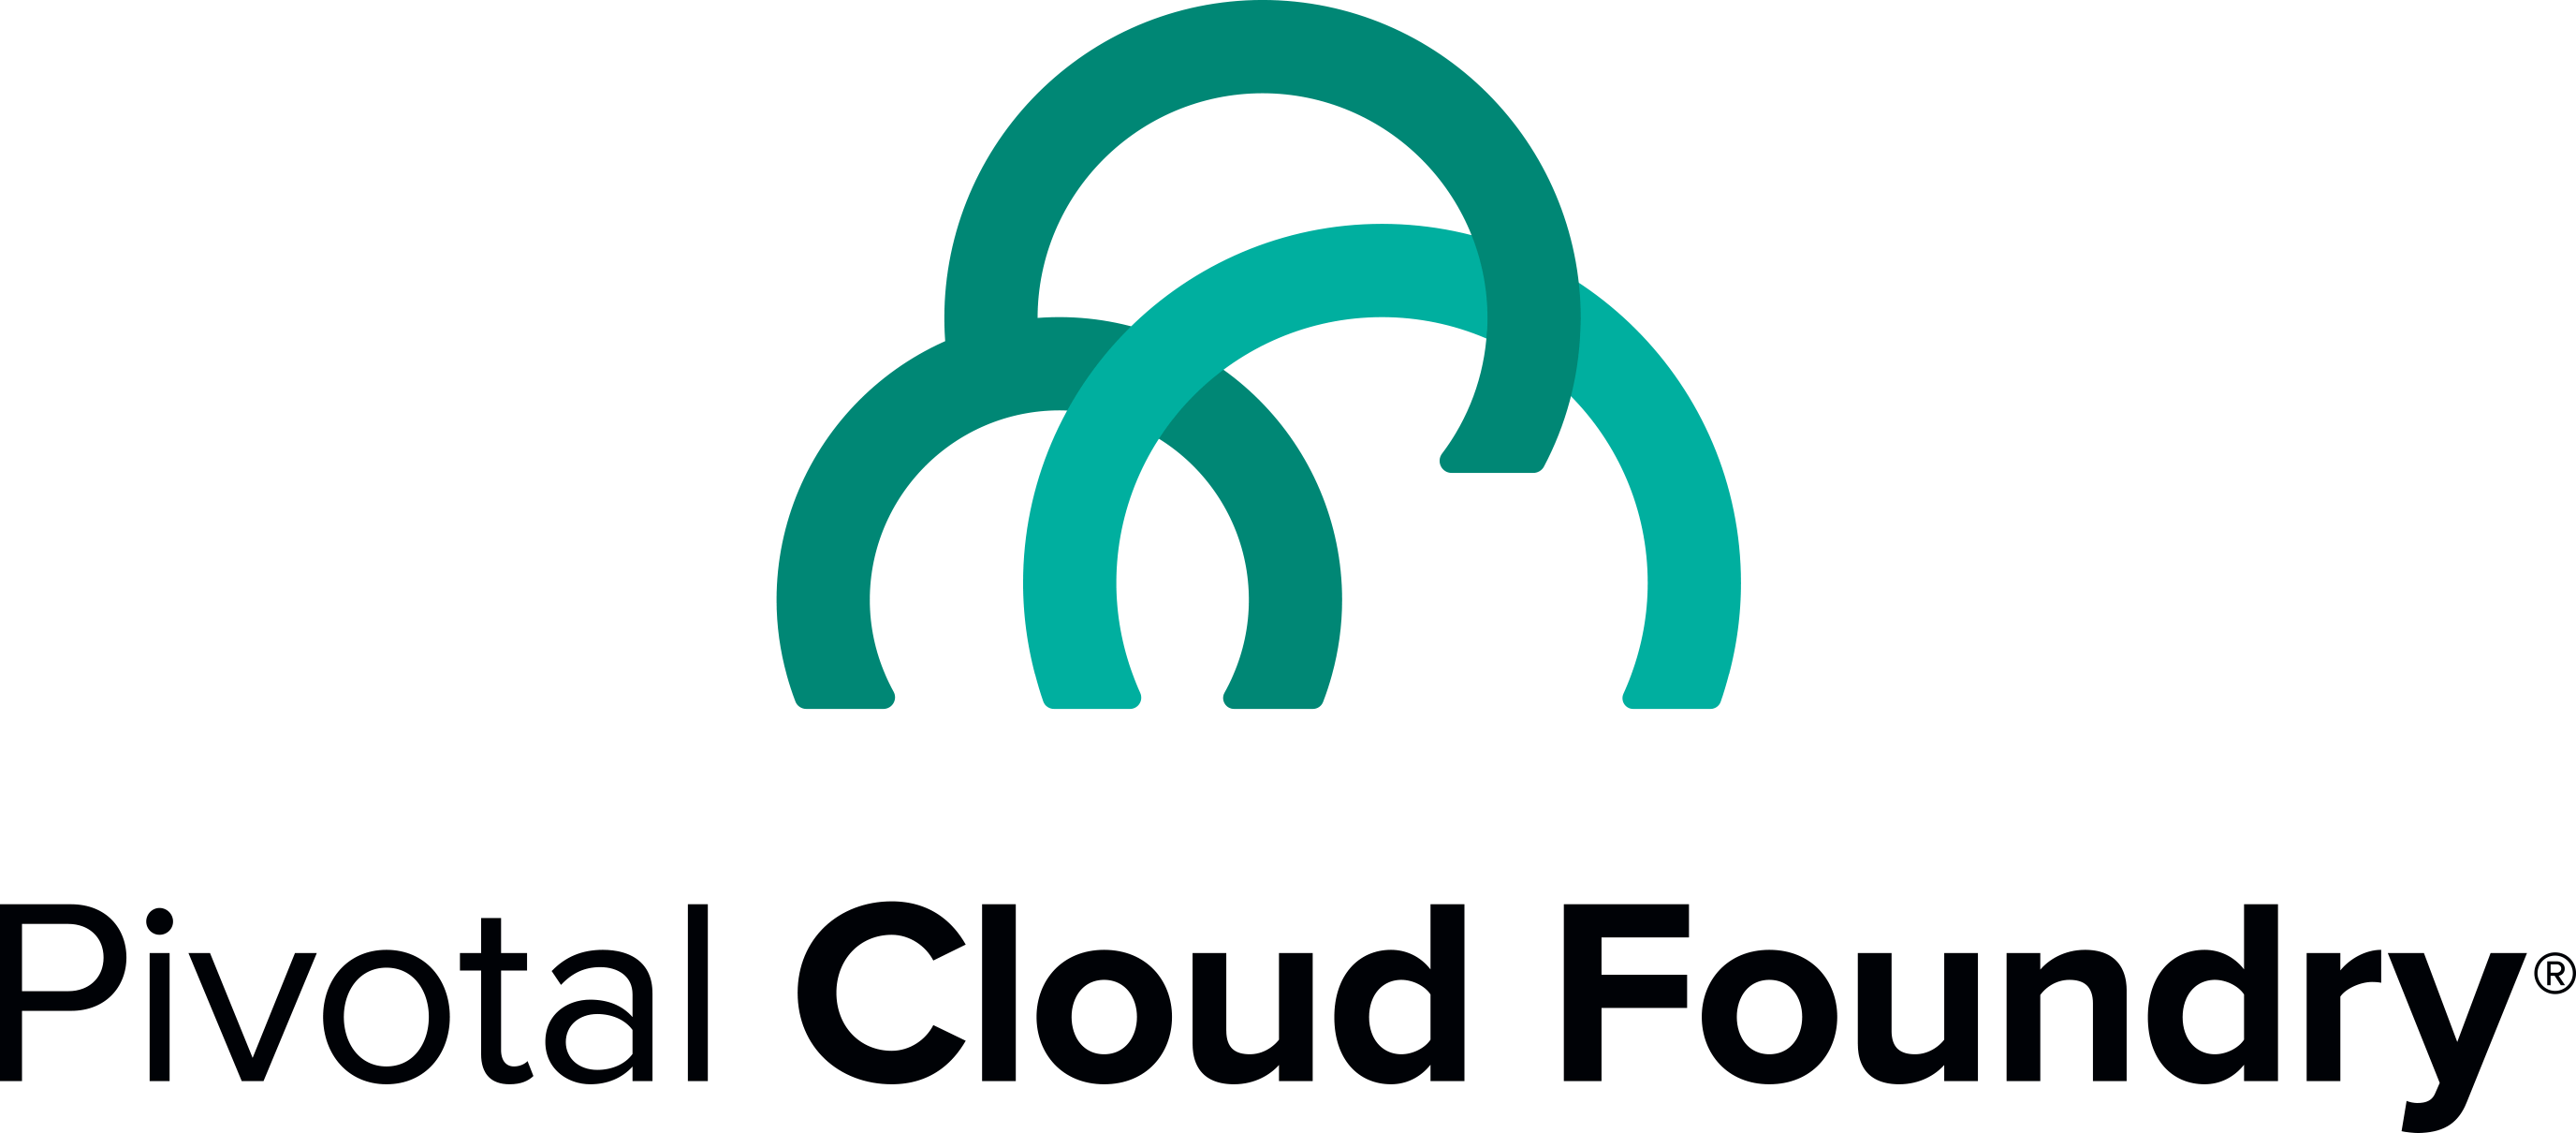 Pivotal Logo - Pivotal cloud foundry Logos